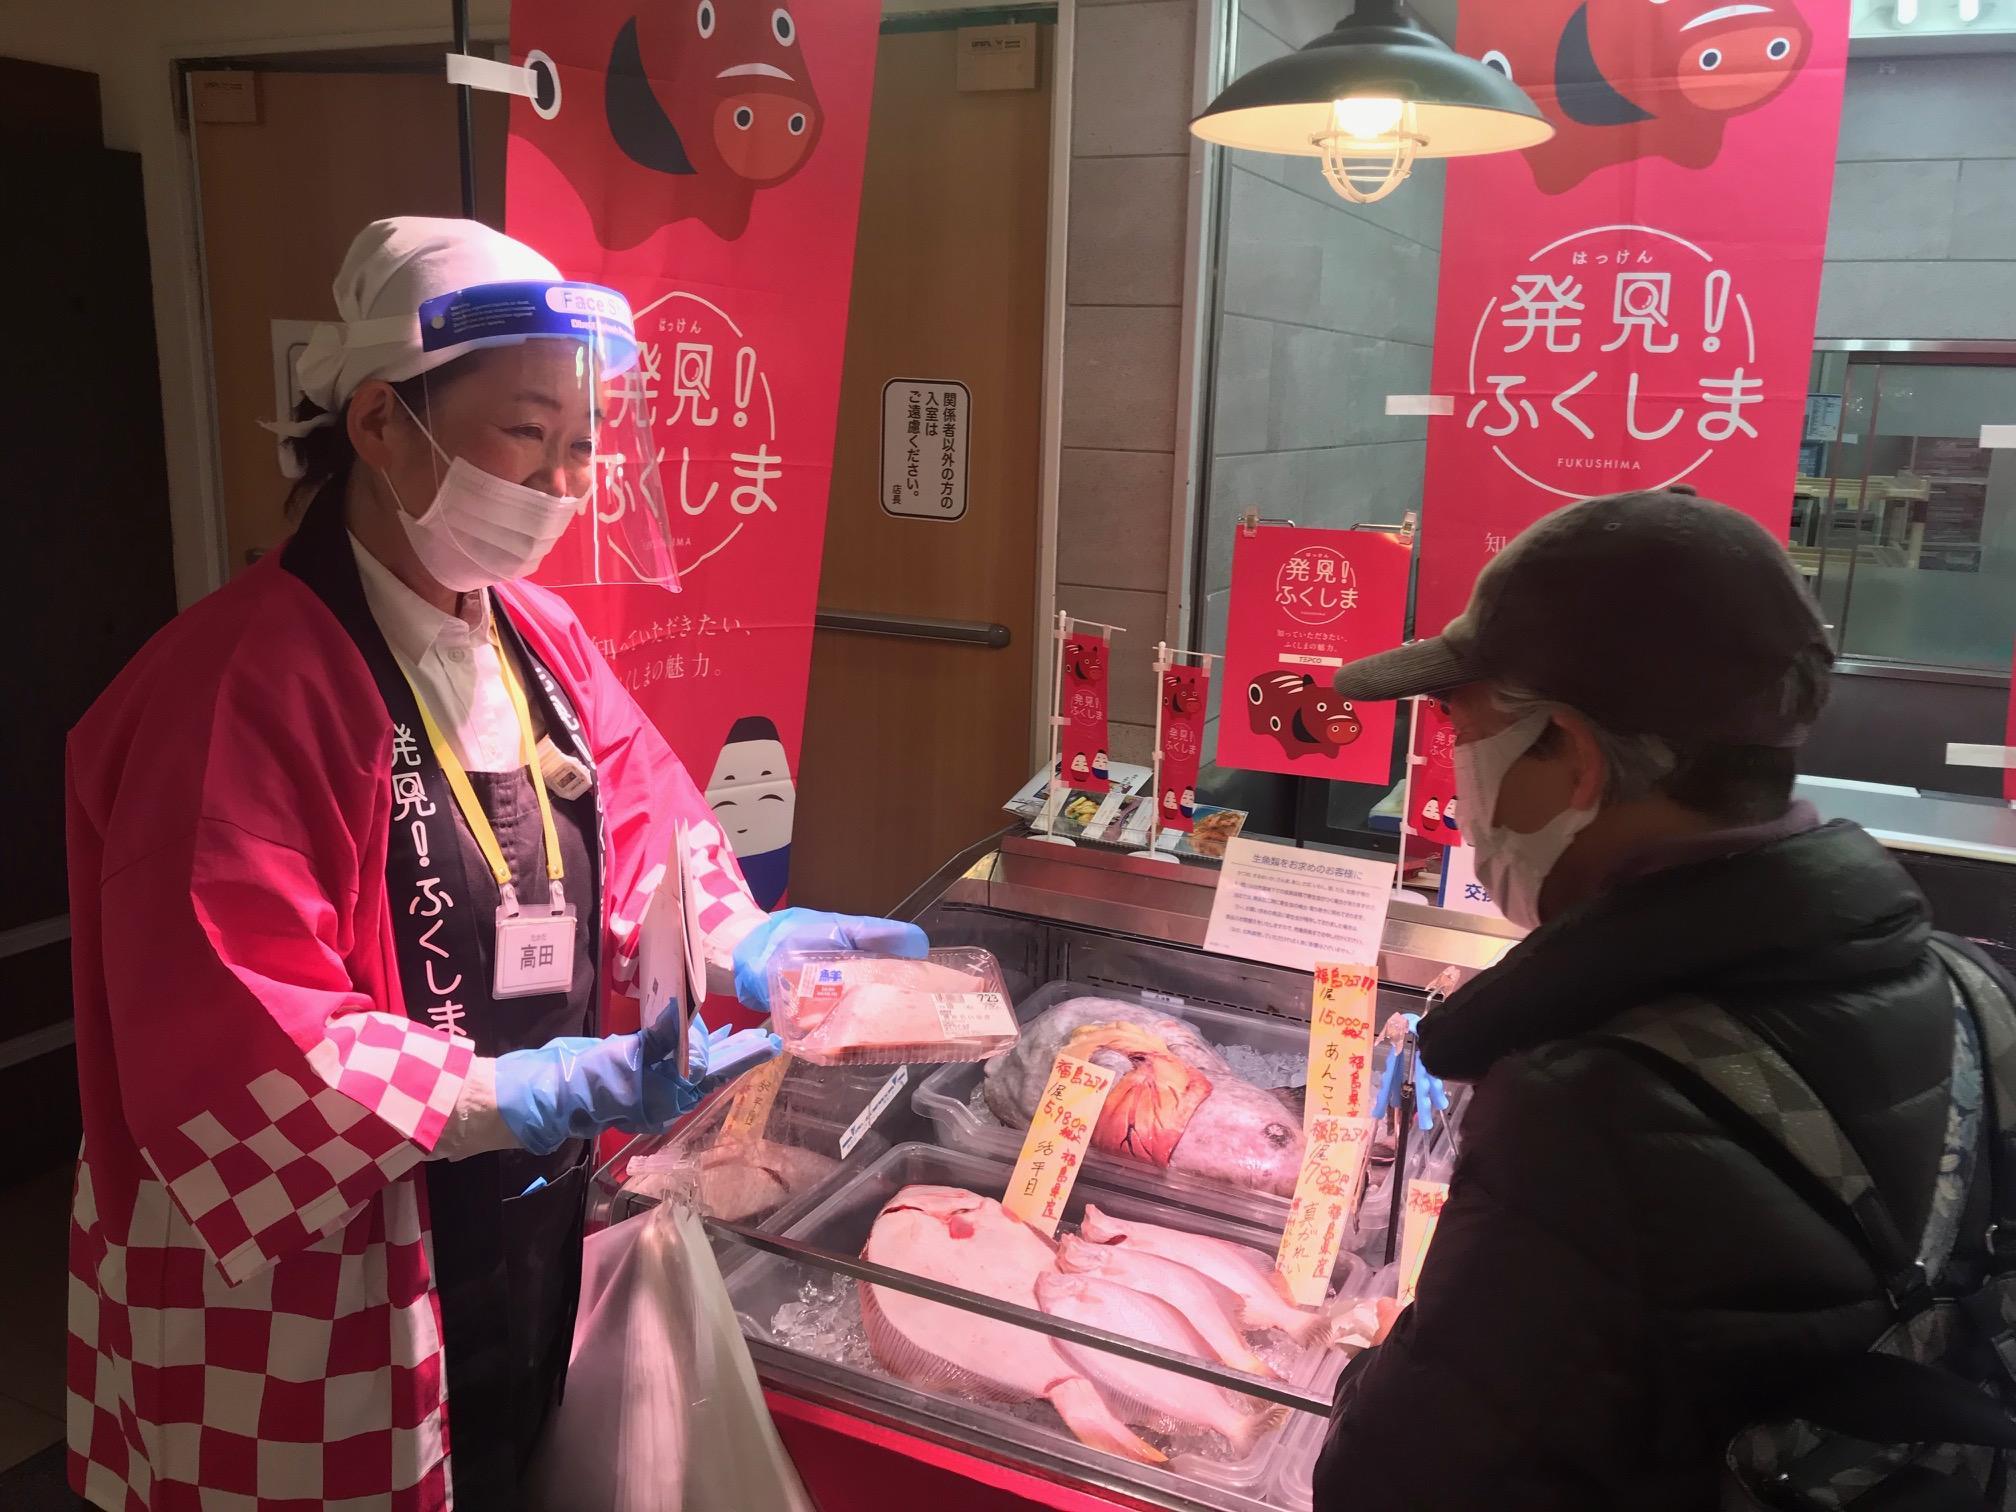 福島の漁業 復興と資源保全を応援 イトーヨーカドー３店舗でフェア開催 産経ニュース